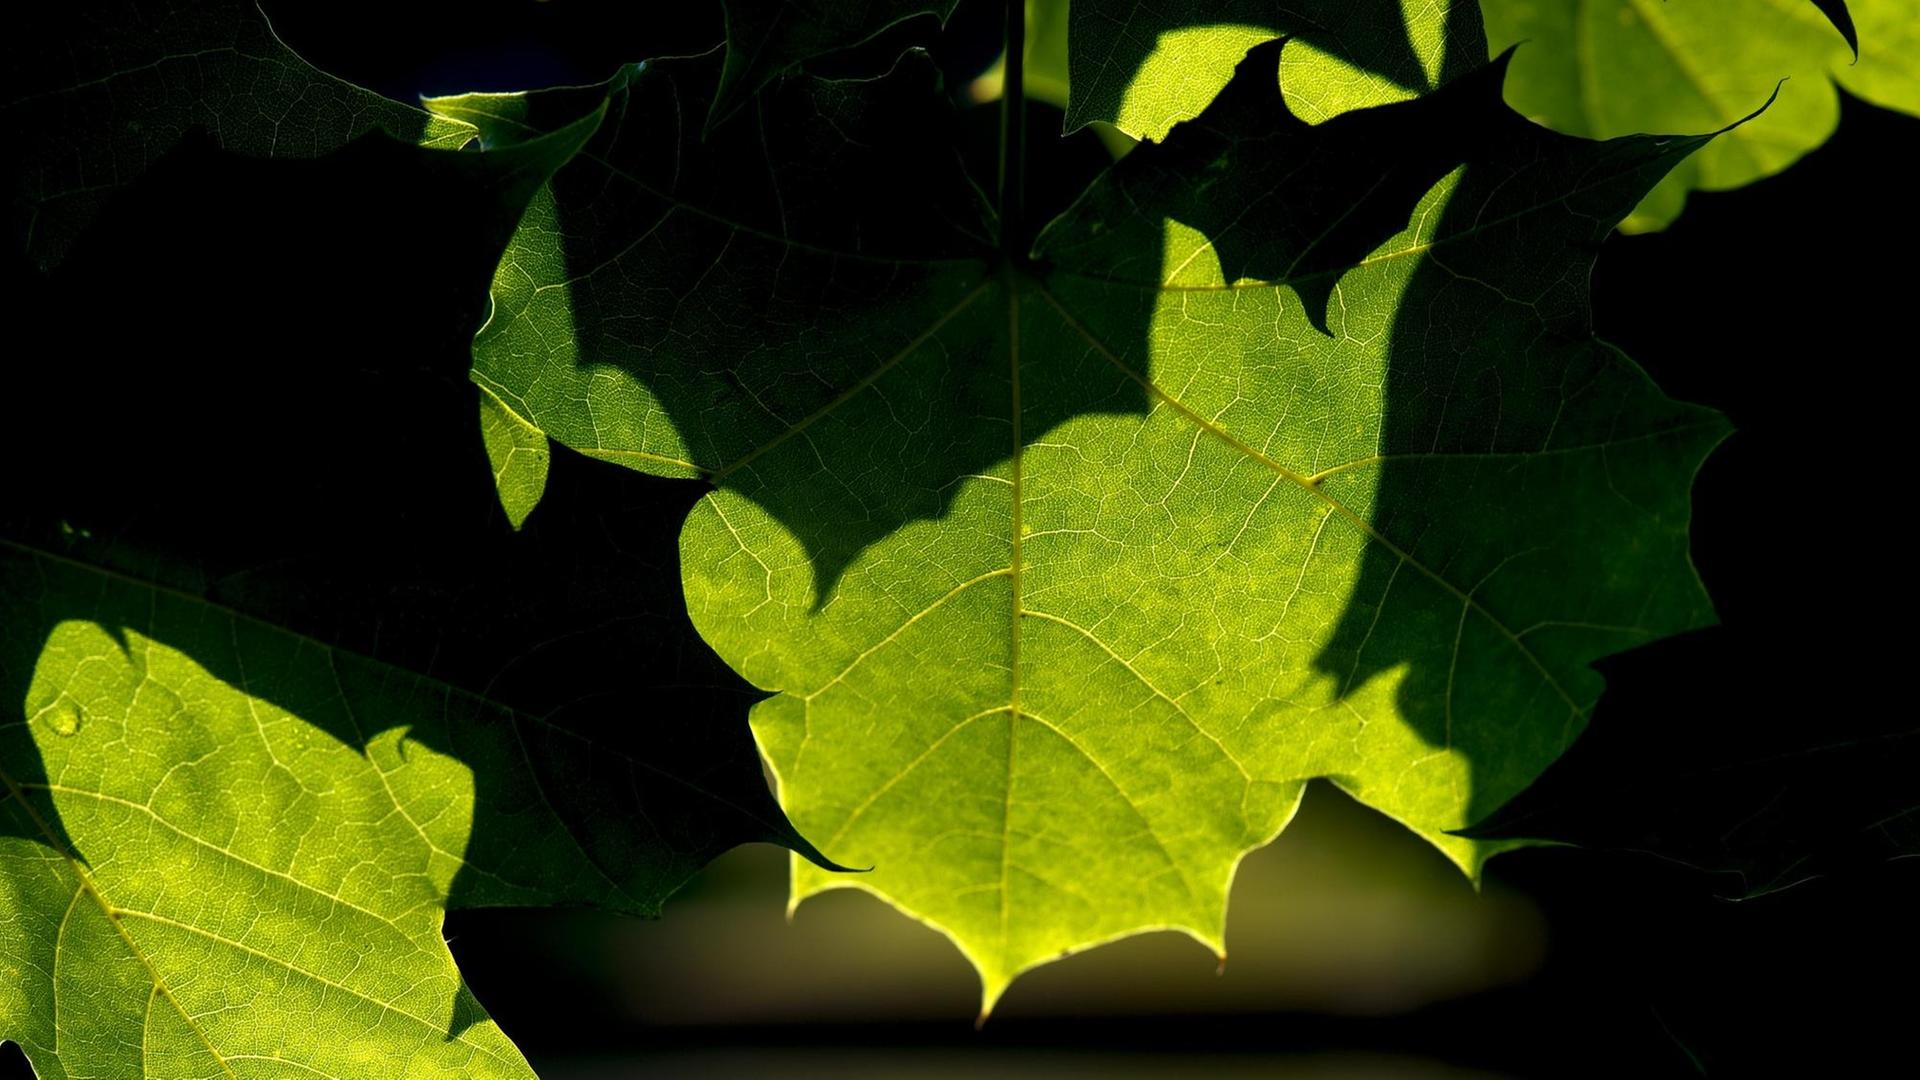 Licht und Schatten zeichnen sich am Freitag an satt grünen Blätter ab. Versehen mit Denkfabrik-Stempel.